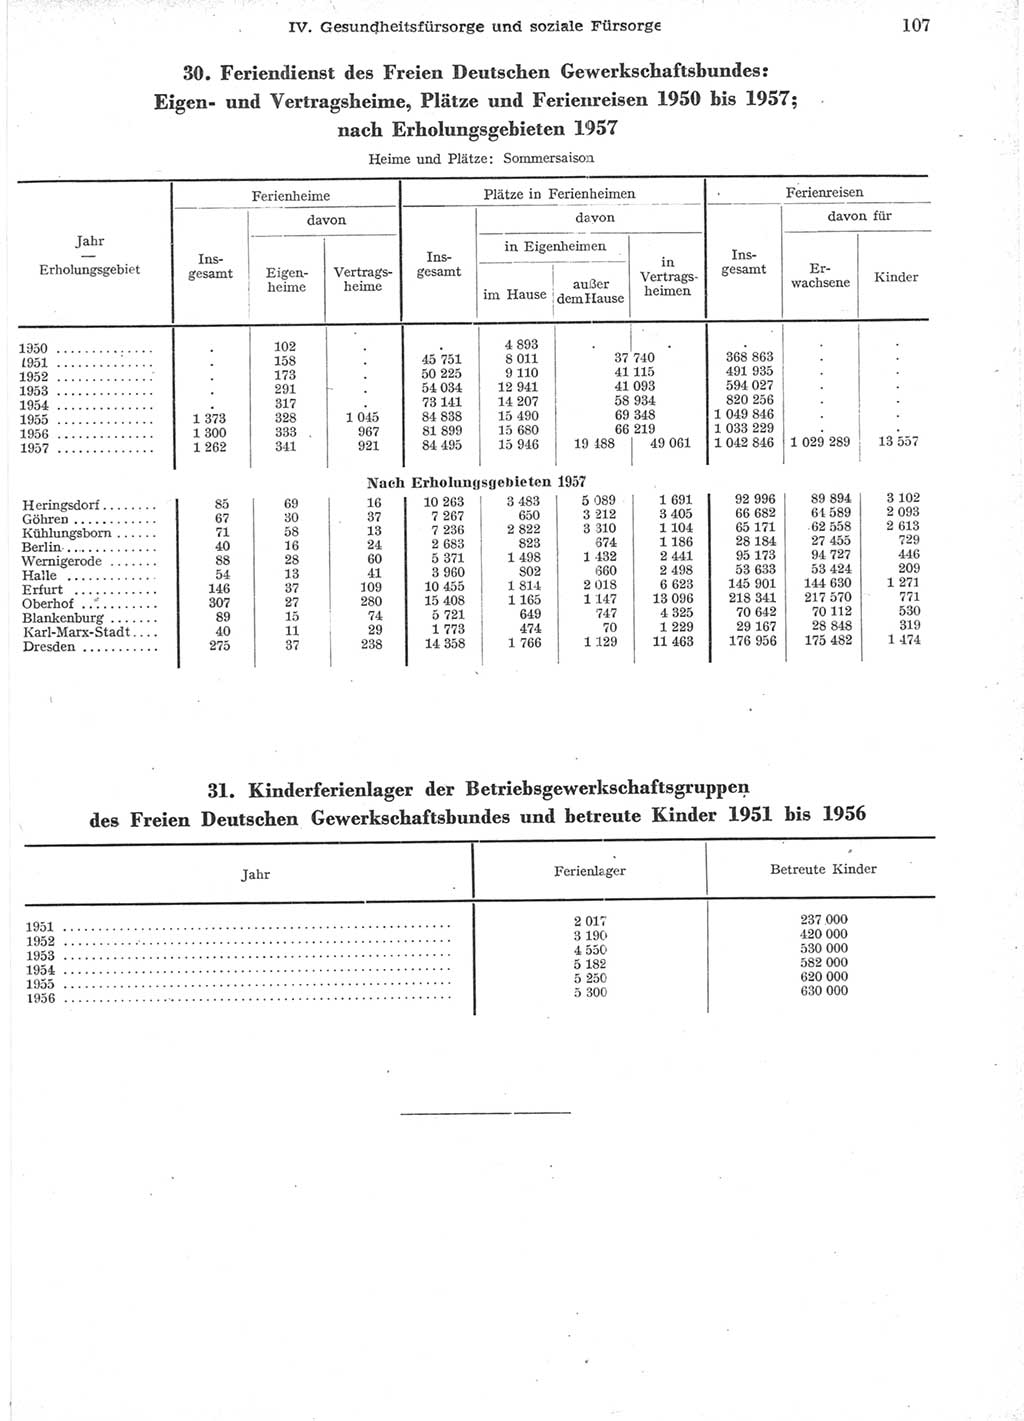 Statistisches Jahrbuch der Deutschen Demokratischen Republik (DDR) 1957, Seite 107 (Stat. Jb. DDR 1957, S. 107)